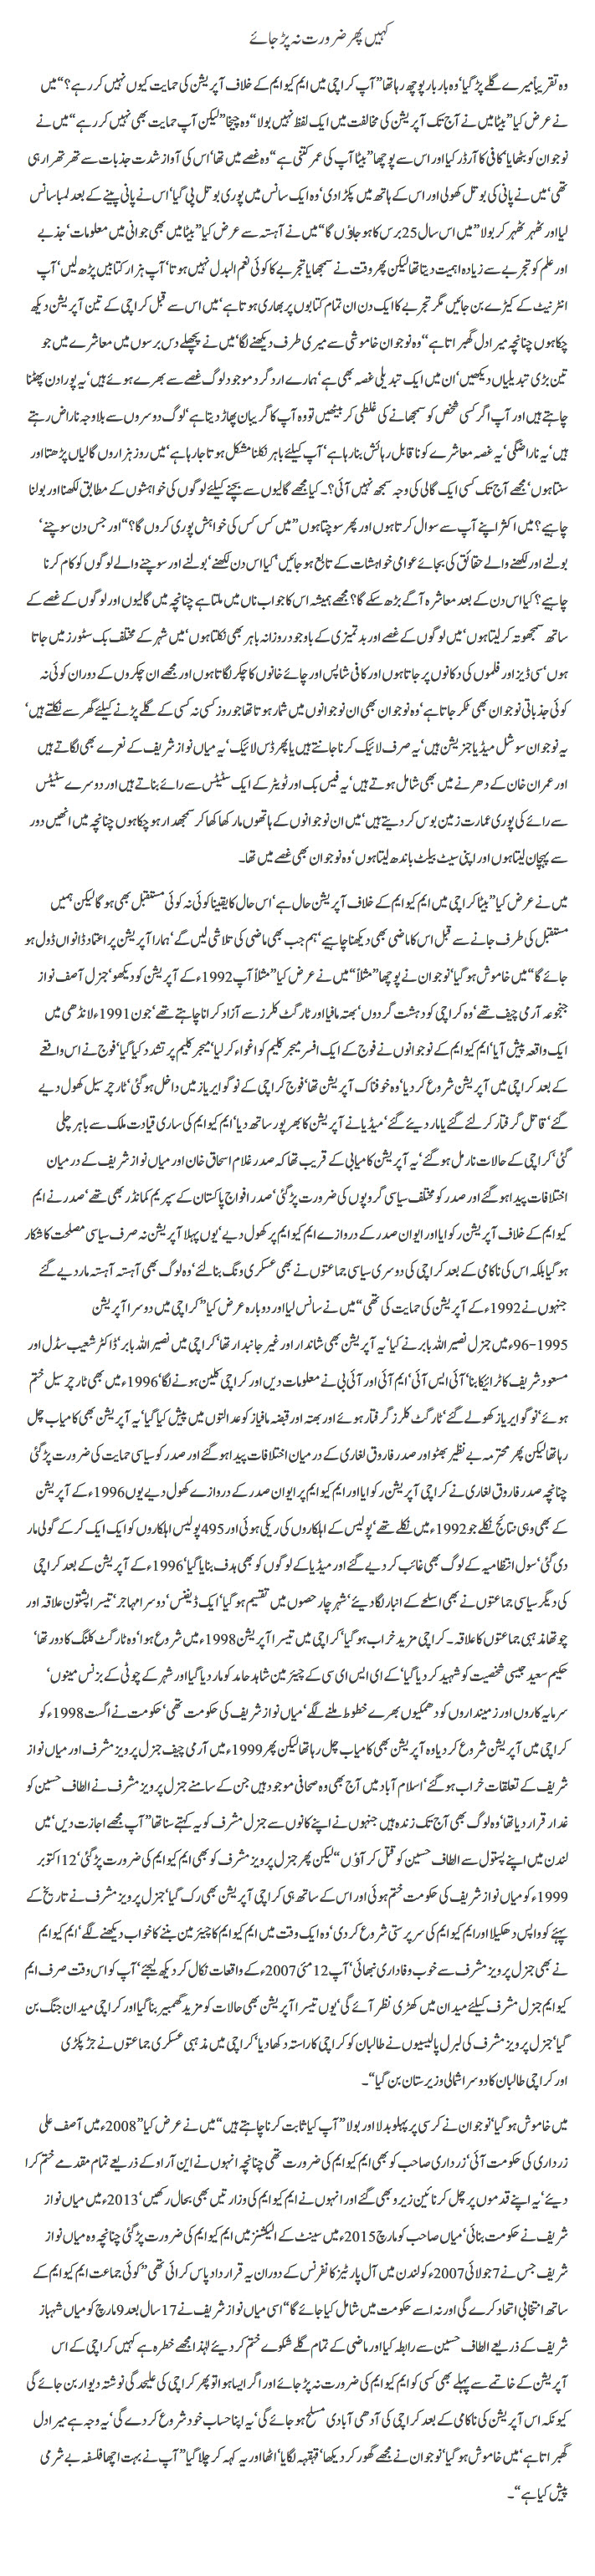 Kahin phir zaroorat na pr jaye By Javed Chaudhry